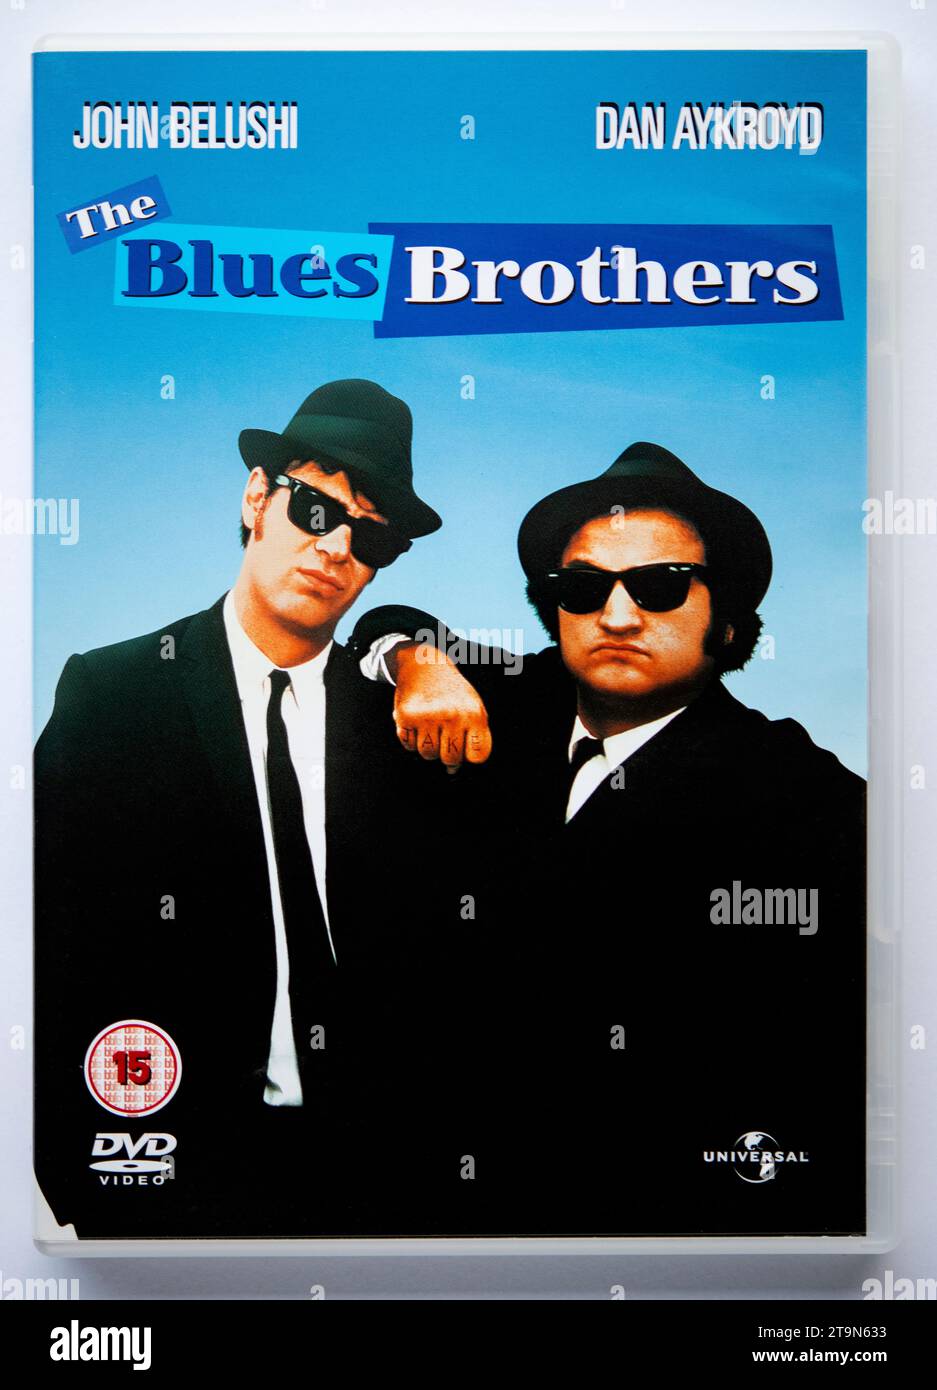 Copertina di una copia in DVD di The Blues Brothers, un musical comico che è stato originariamente pubblicato nei cinema nel 1980 Foto Stock